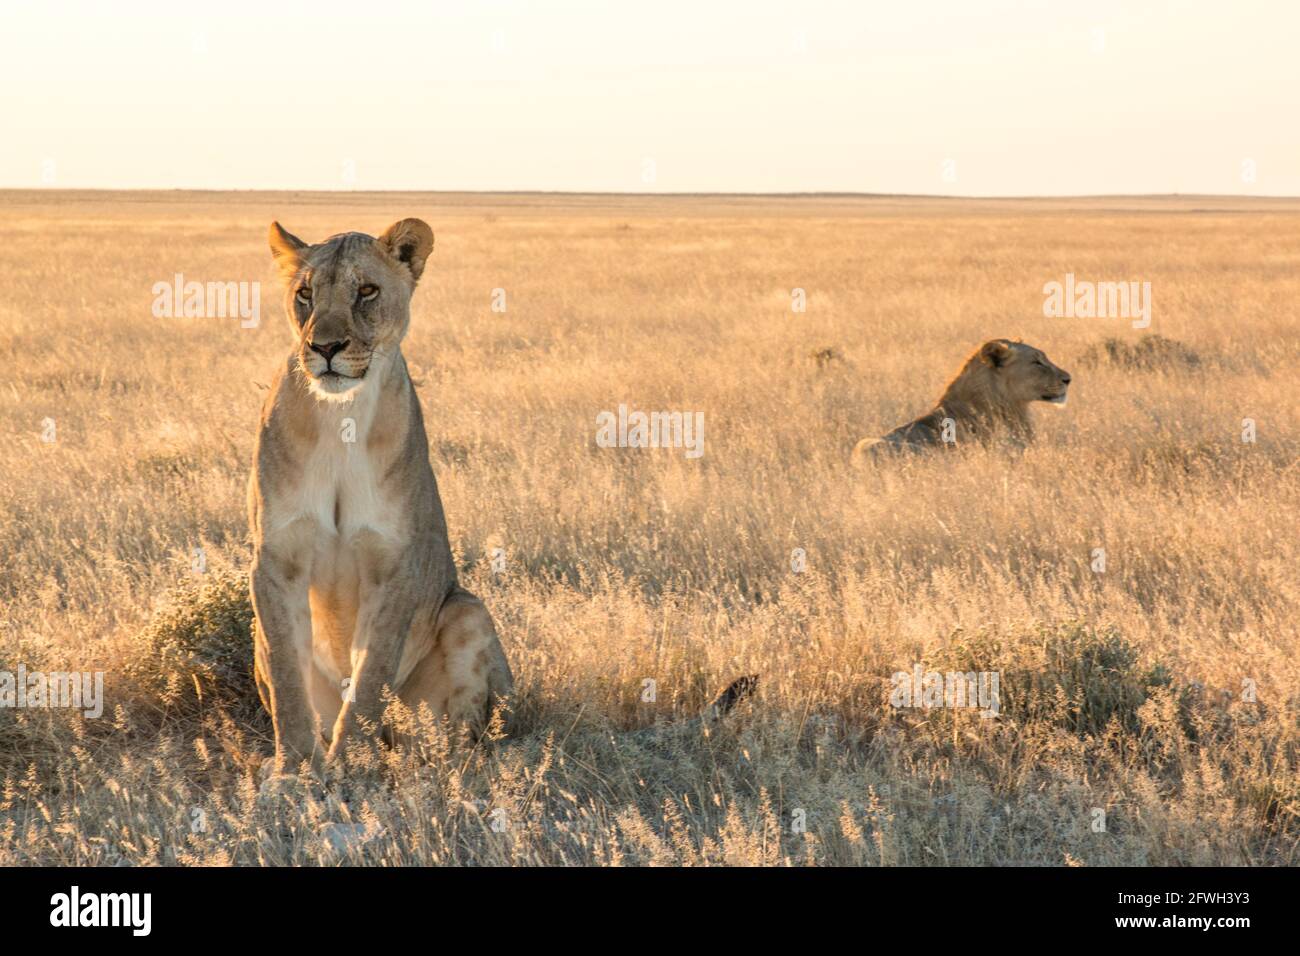 los leones del león okondeka se enorgullecen del parque nacional etosha Foto de stock